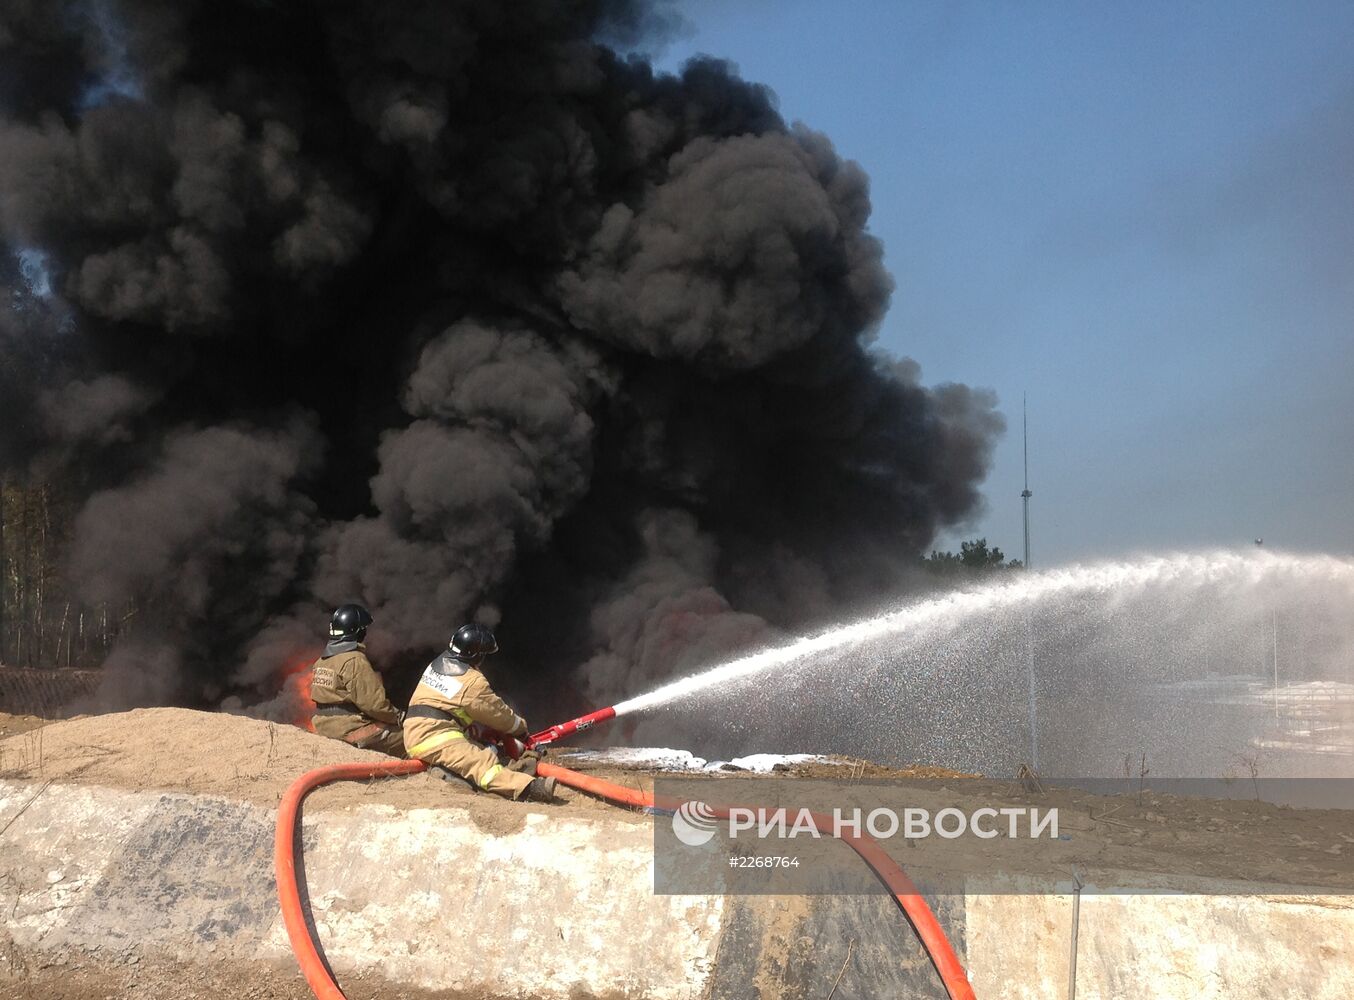 Пожар в нефтяном резервуаре в Иркутской области